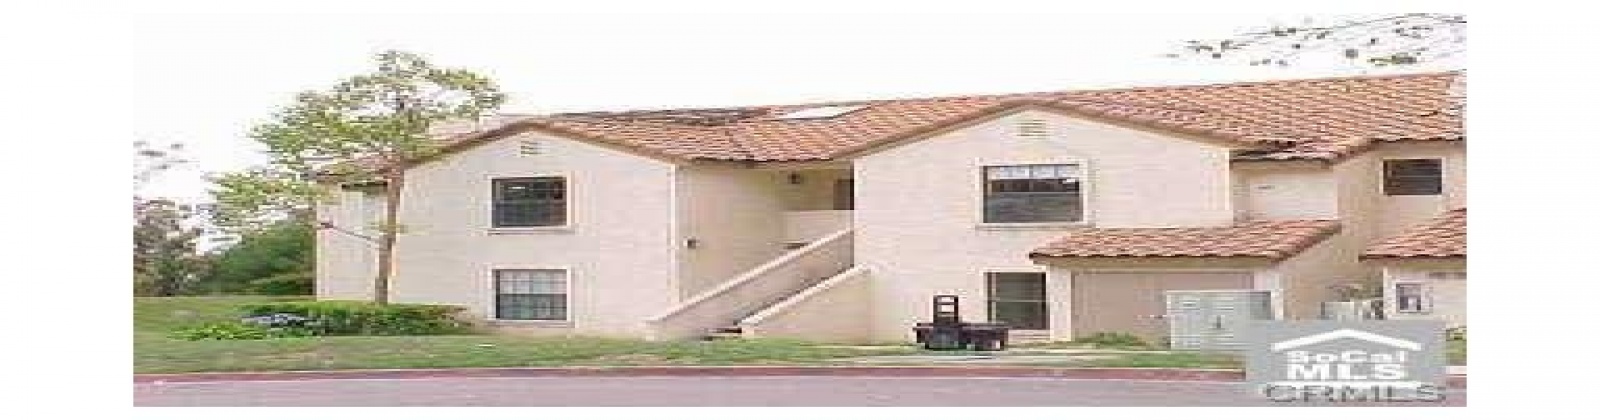 1040 CALLE DEL CERRO # 107, San CLemente, California 92672, 2 Bedrooms Bedrooms, ,2 BathroomsBathrooms,Condo,Leased,CALLE DEL CERRO # 107,1434